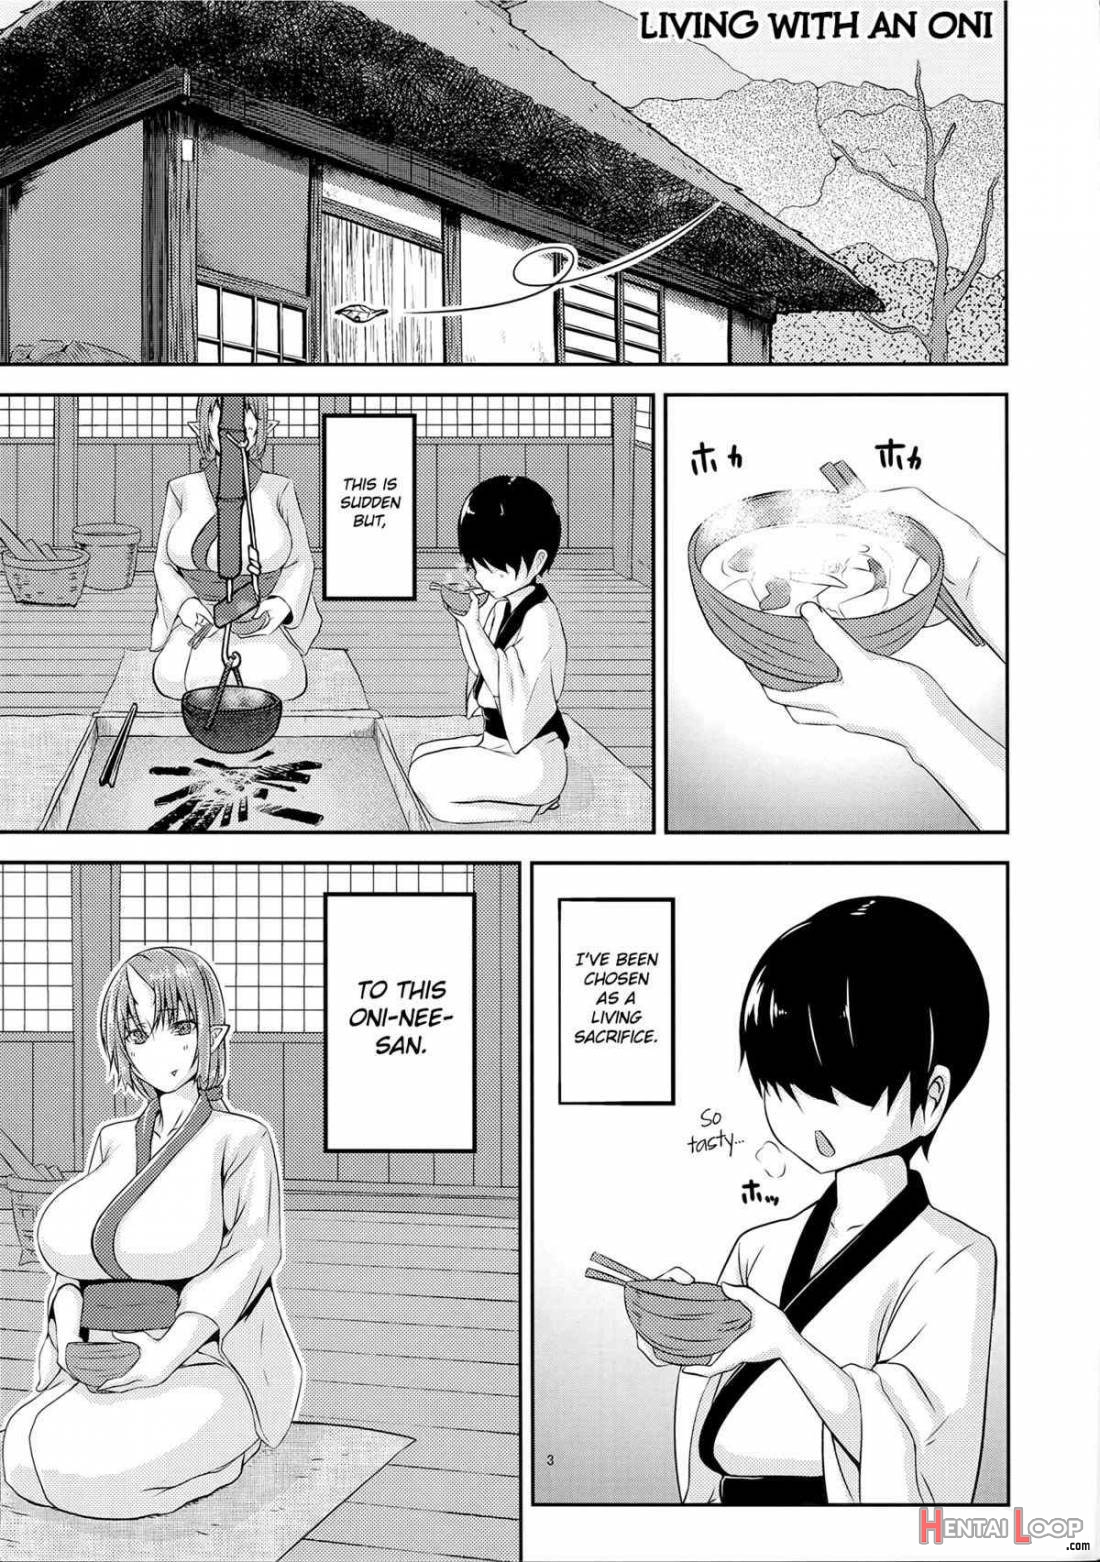 Onikurashi page 2